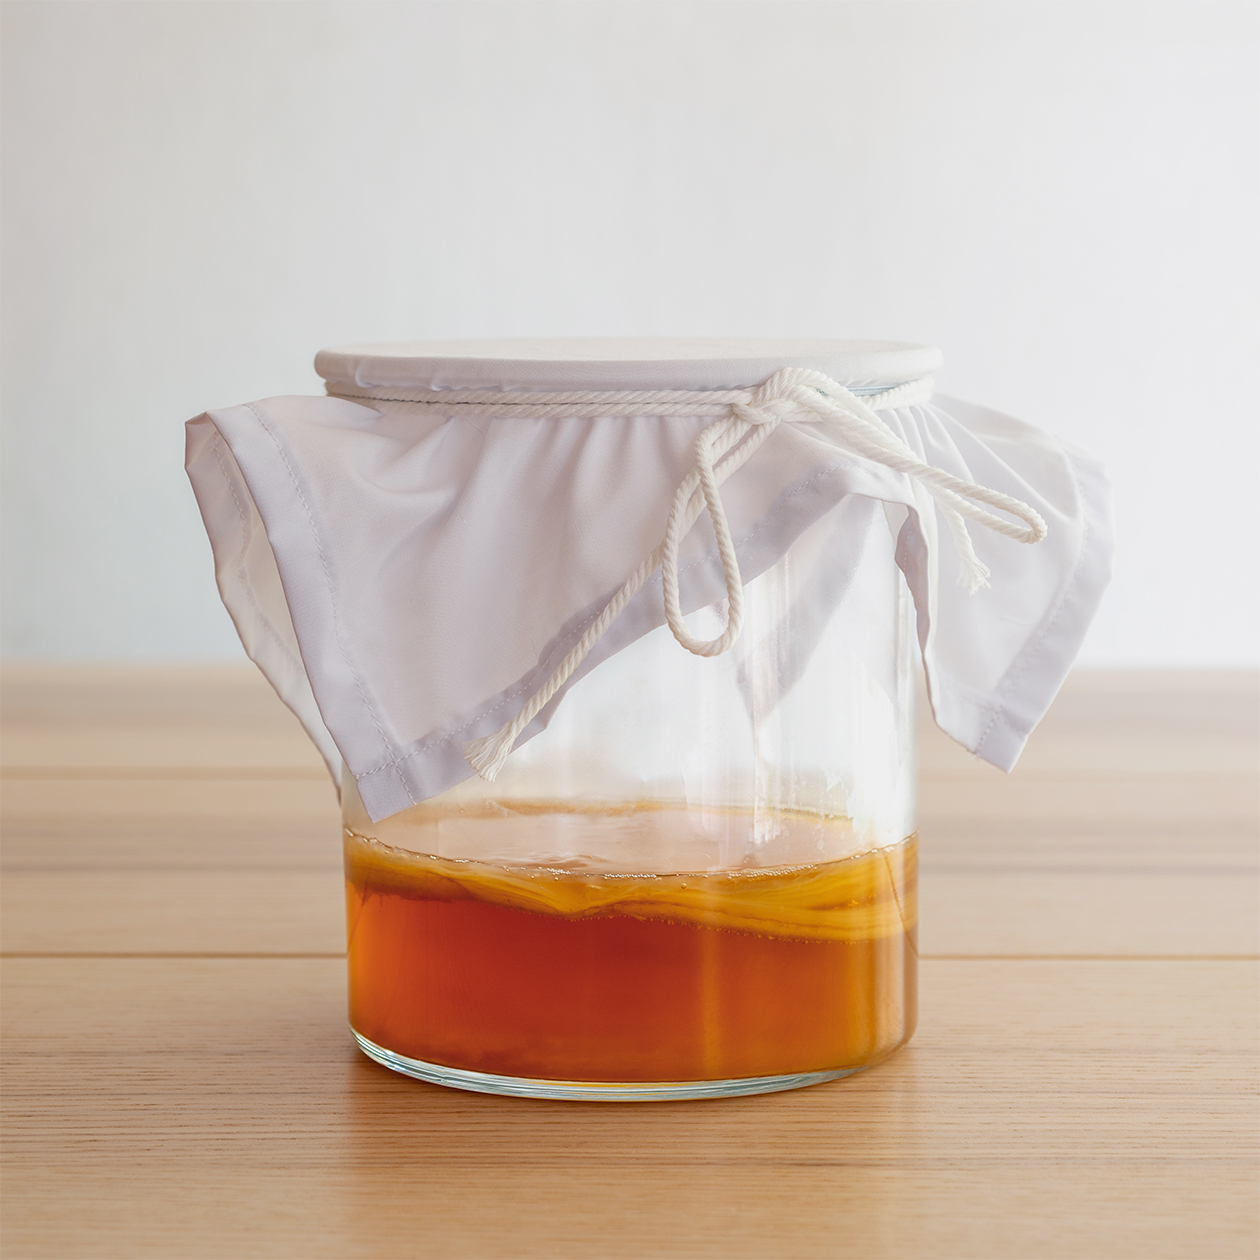 Так можно хранить чайный гриб, если какое⁠-⁠то время не нужно делать напиток. Фото: P-fotography / Shutterstock